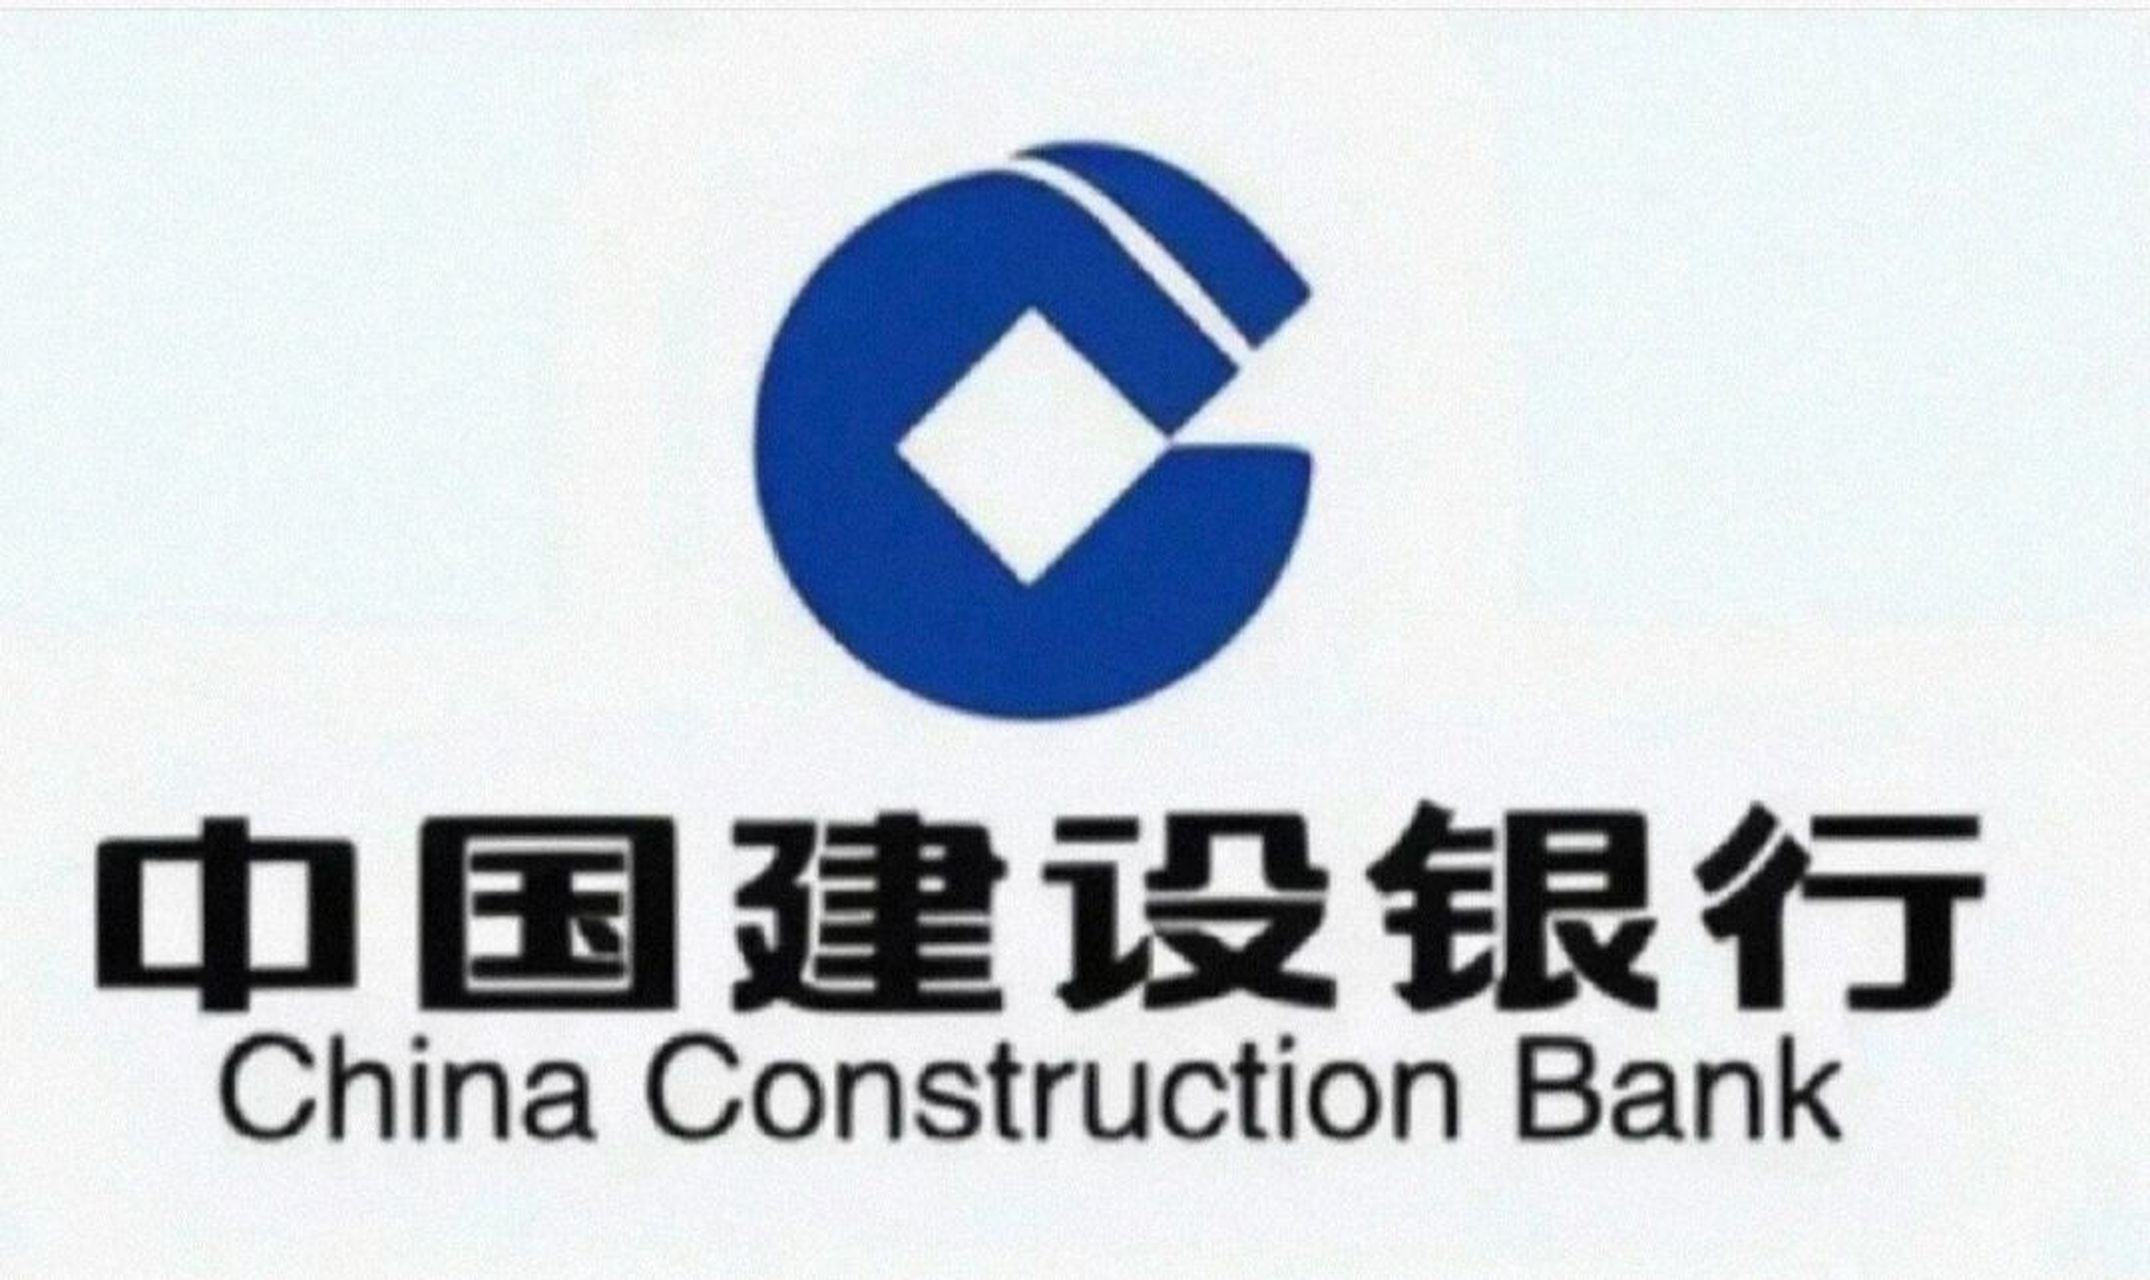 中国建设银行 秋招offer③: 建信人寿 93中国建设银行